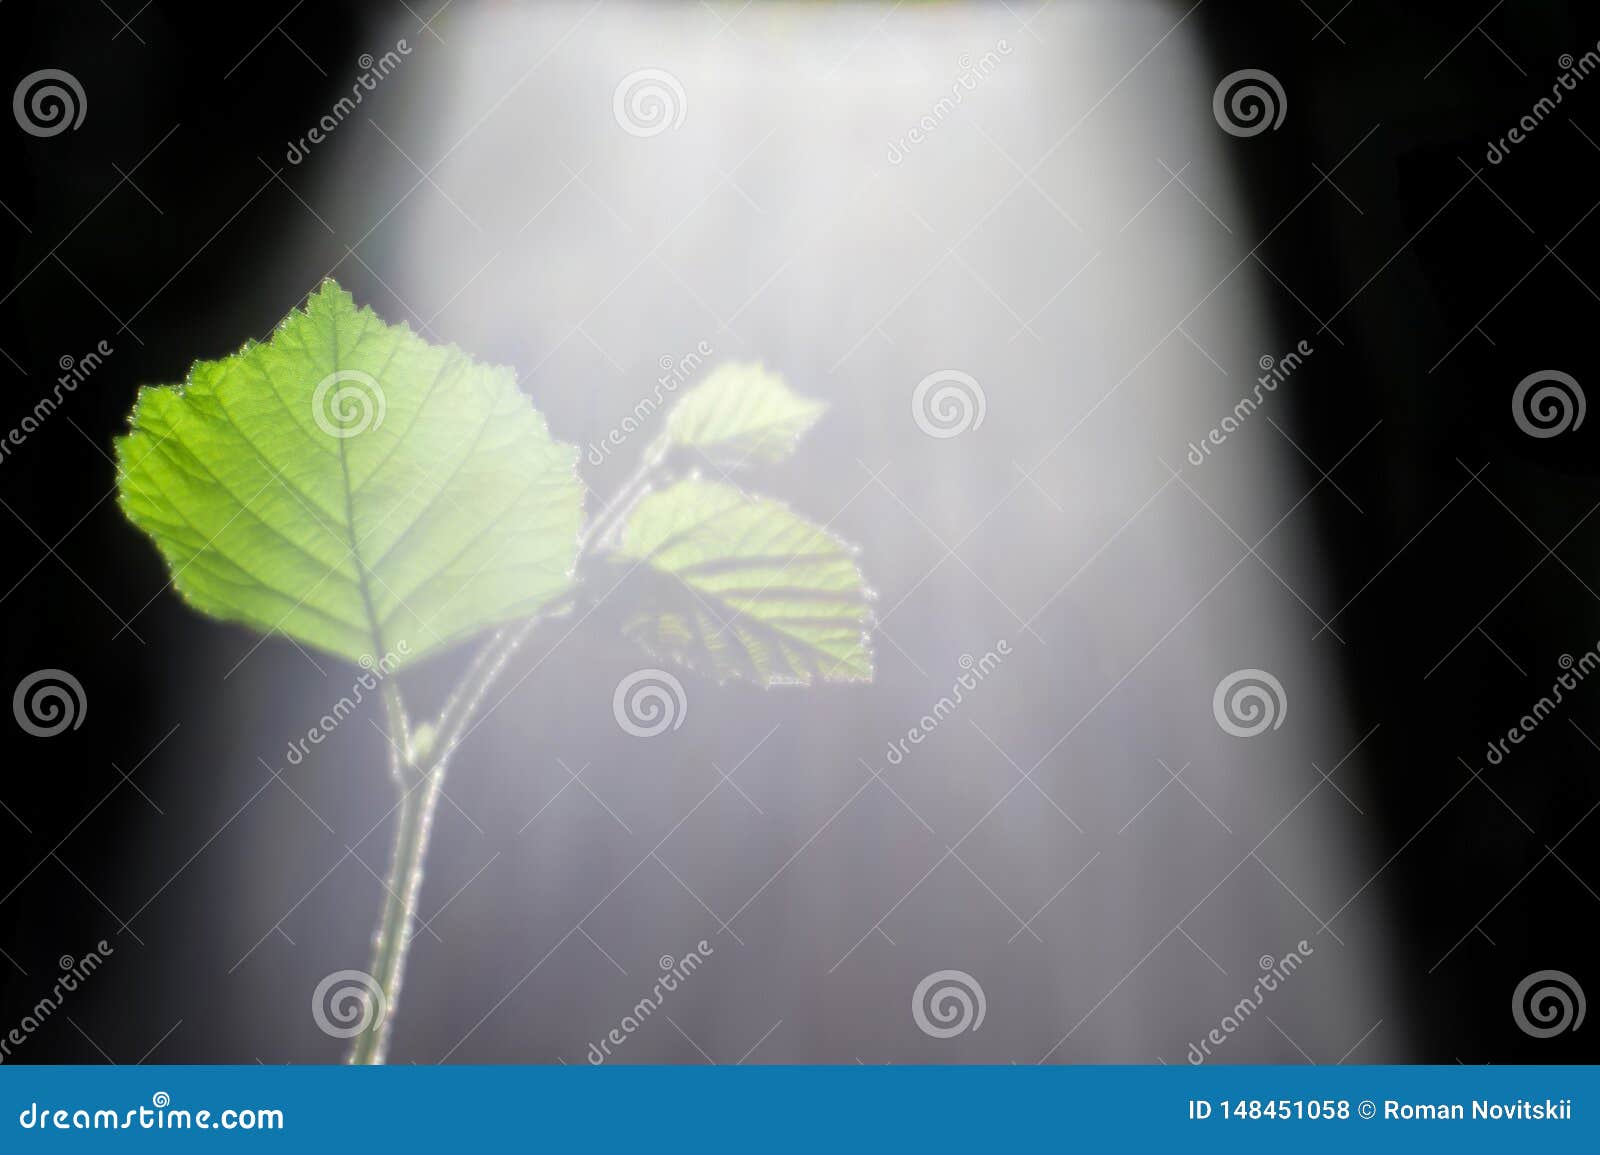 Desfoque com profundidade superficial de campo O broto verde de um jovem ramo de um Bush de avelã iluminado pelo sol com um espectro de luz visível Fluxo de luz solar não filtrado